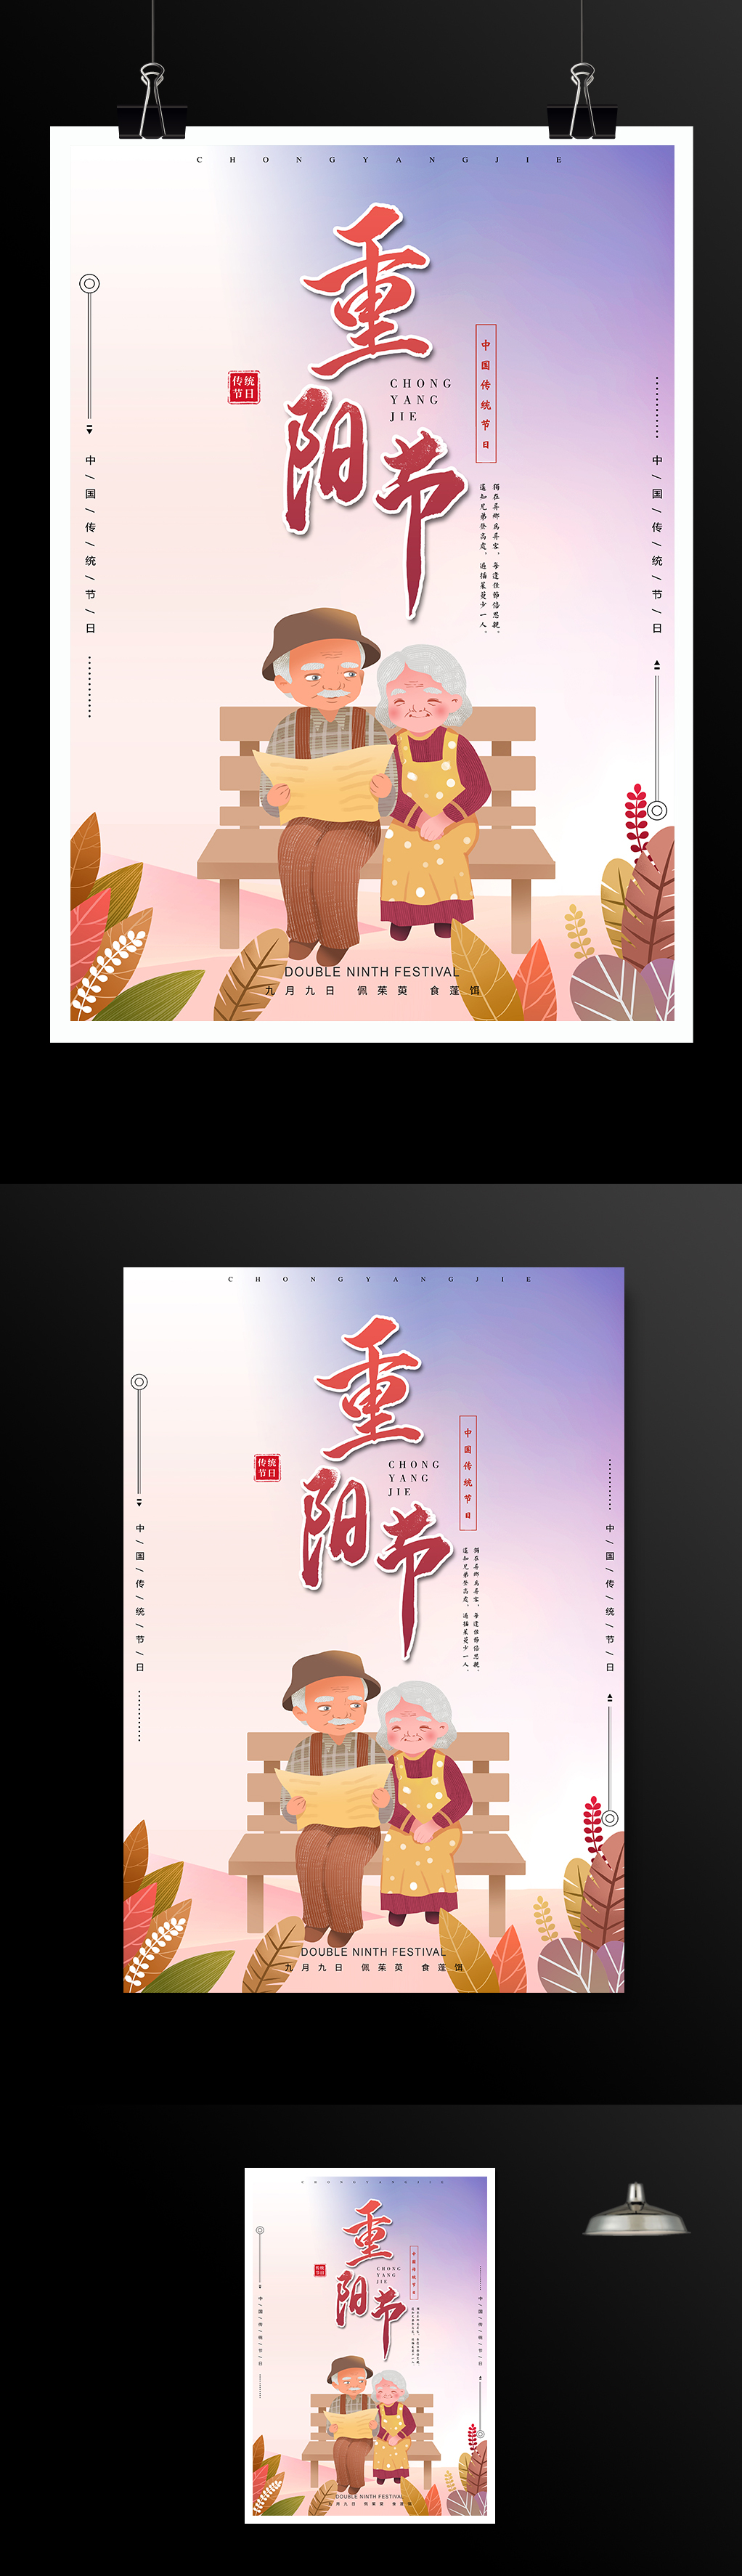 中国传统节日重阳节宣传海报